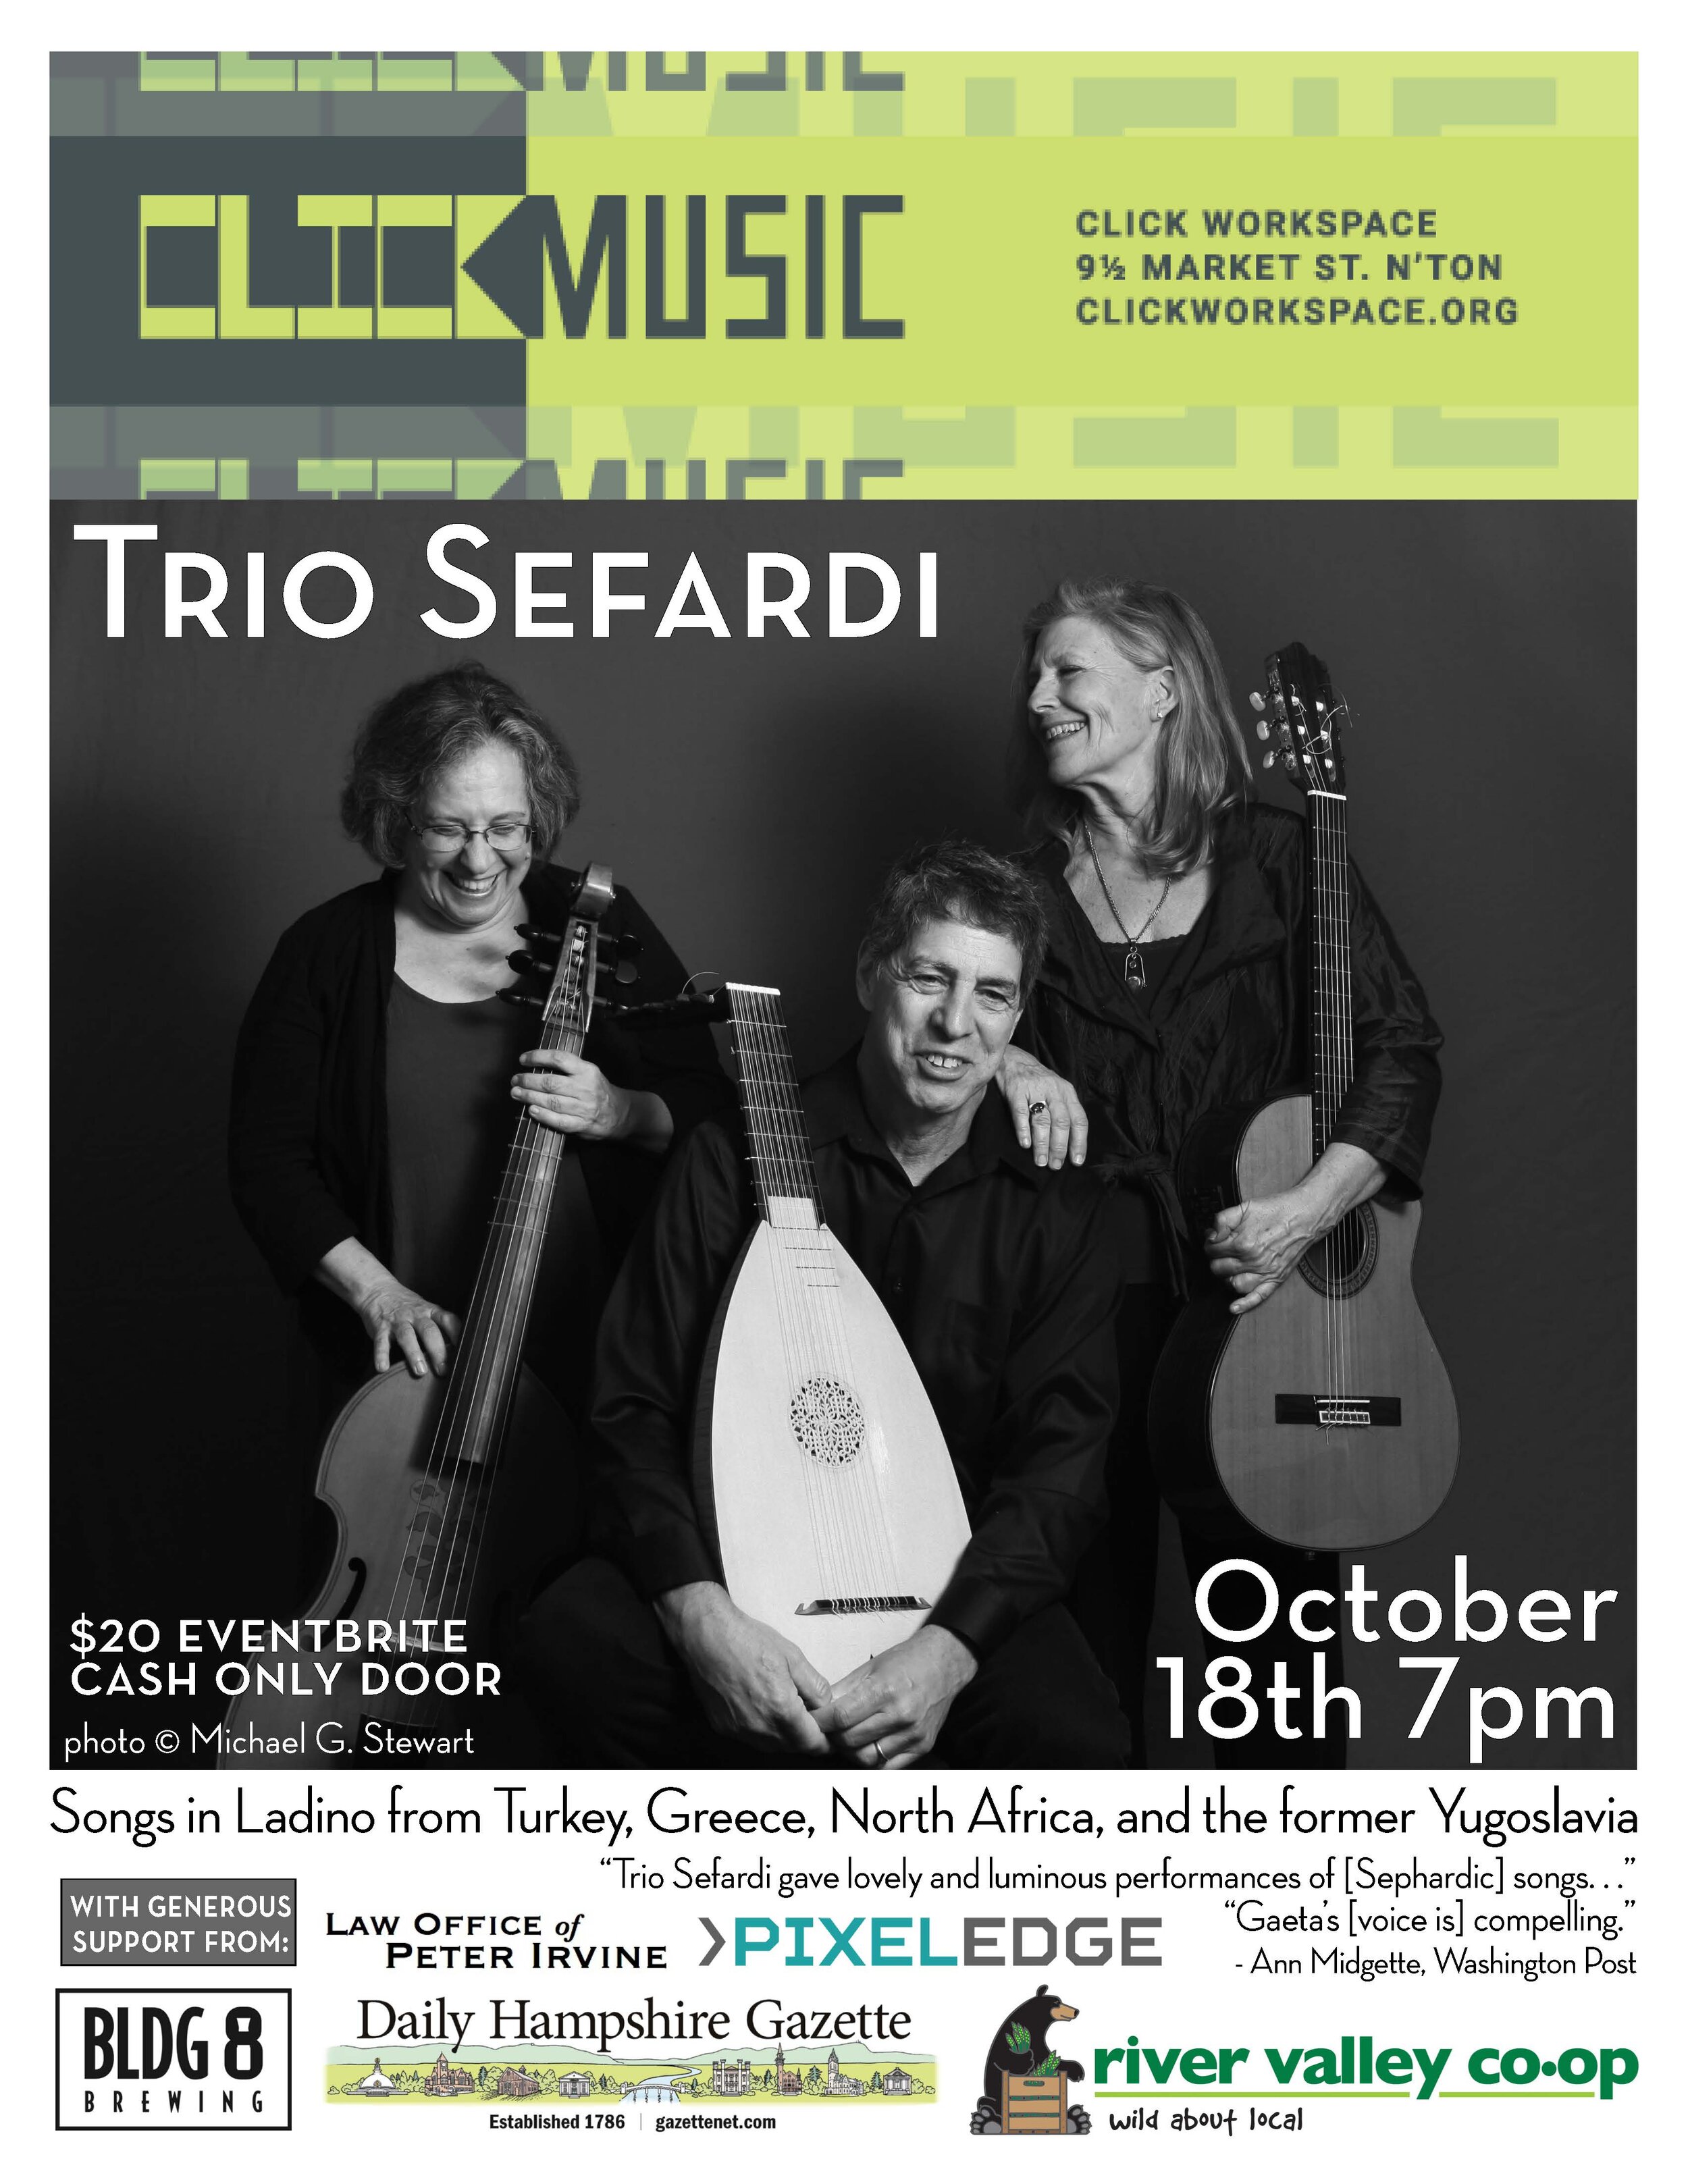  Flyer for Trio Sefardi at CLICK. 